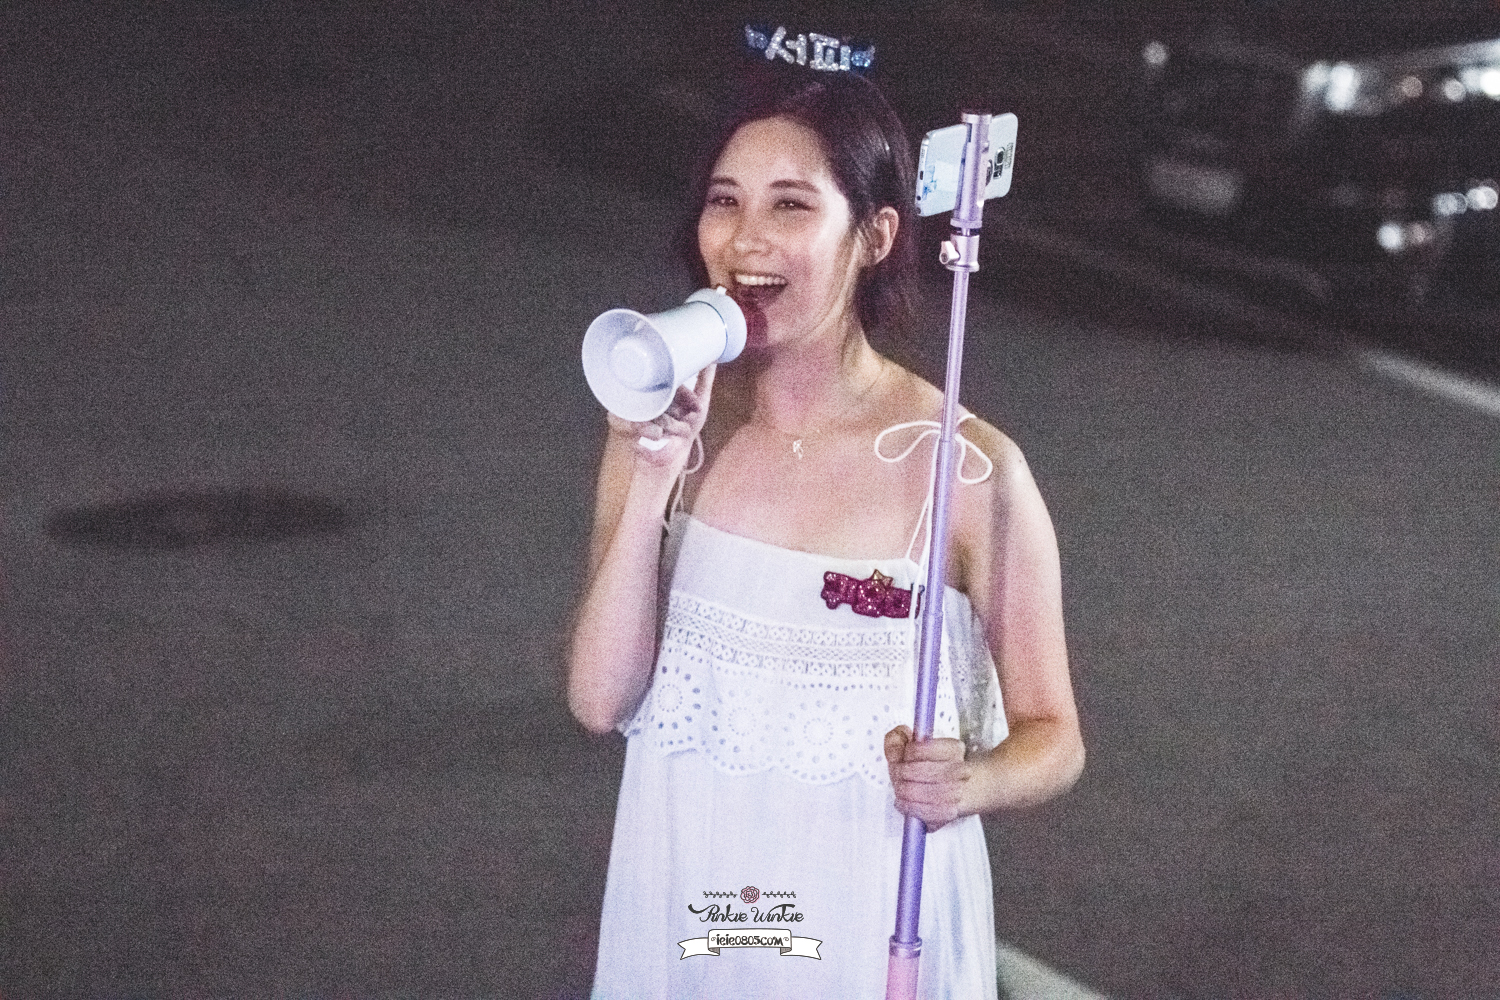 [OTHER][08-12-2015]SeoHyun tham dự vở nhạc kịch mới mang tên "Mamma Mia!" - Page 37 33506348866_db327b7aa4_o